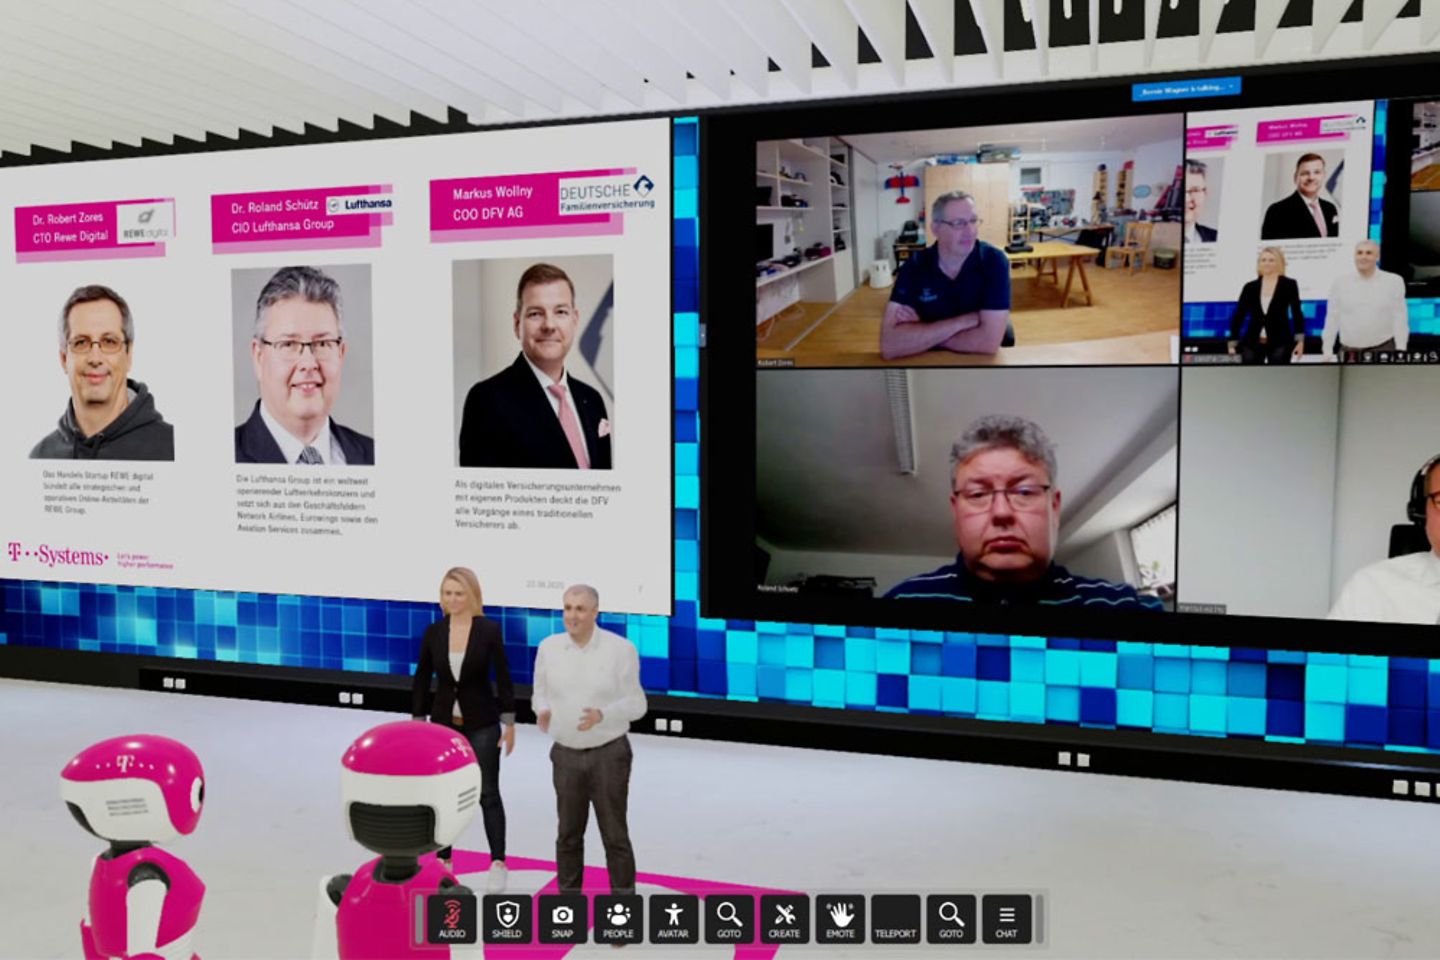 Videoconferentie in een virtuele ruimte met twee personen op één beeldscherm via de webcam en twee virtuele moderatoren